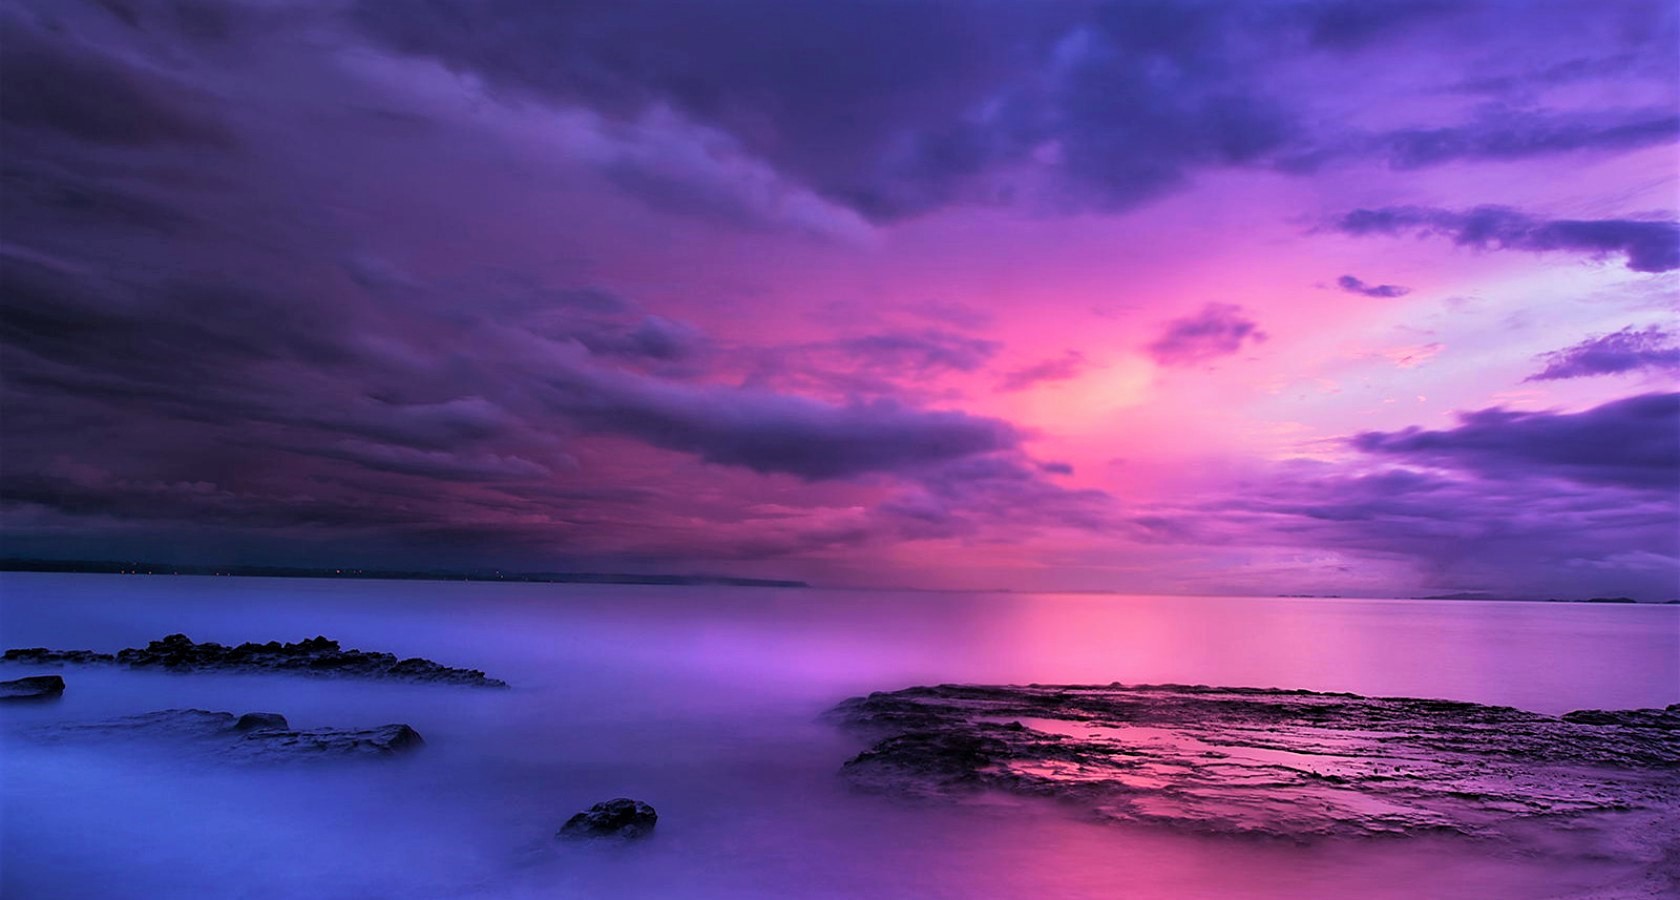 Purple Ocean